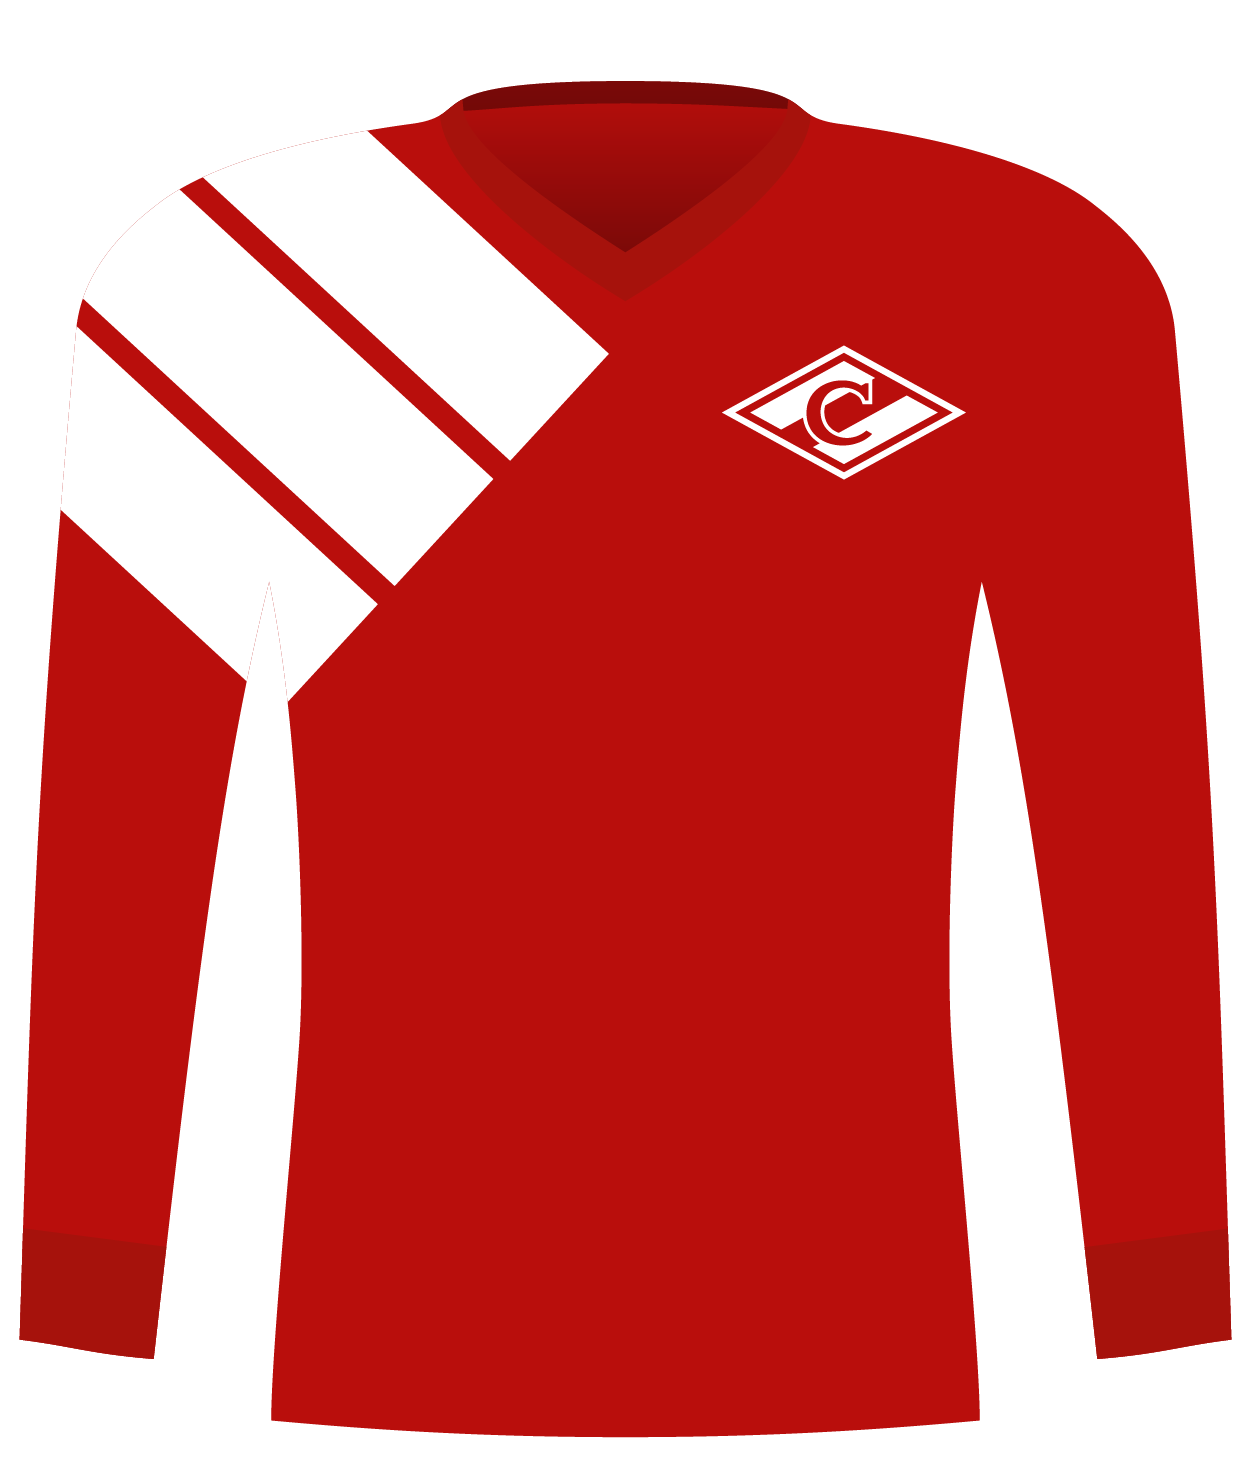 Koszulka Spartak Moskwa (1993).